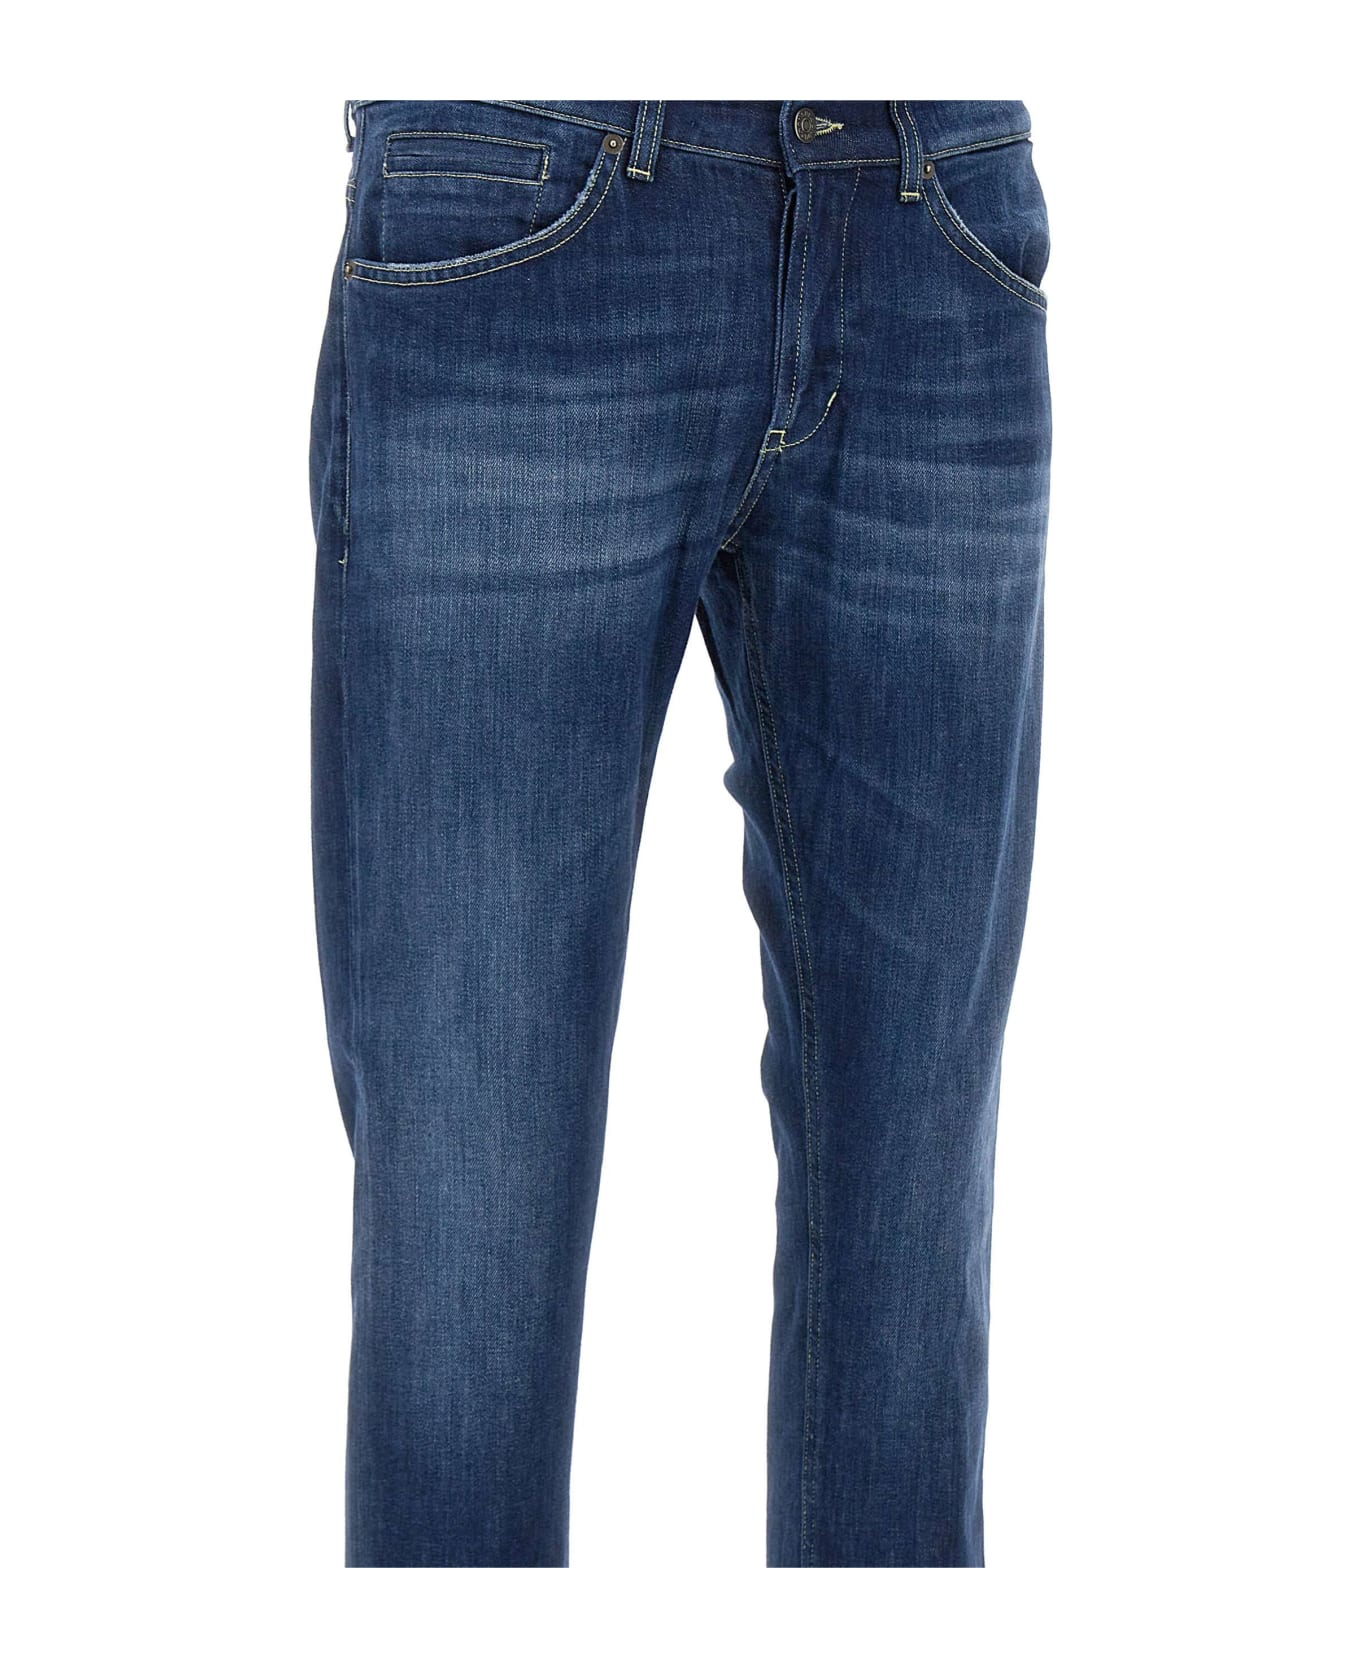 Dondup 'george' Jeans - Blu Medio Scuro